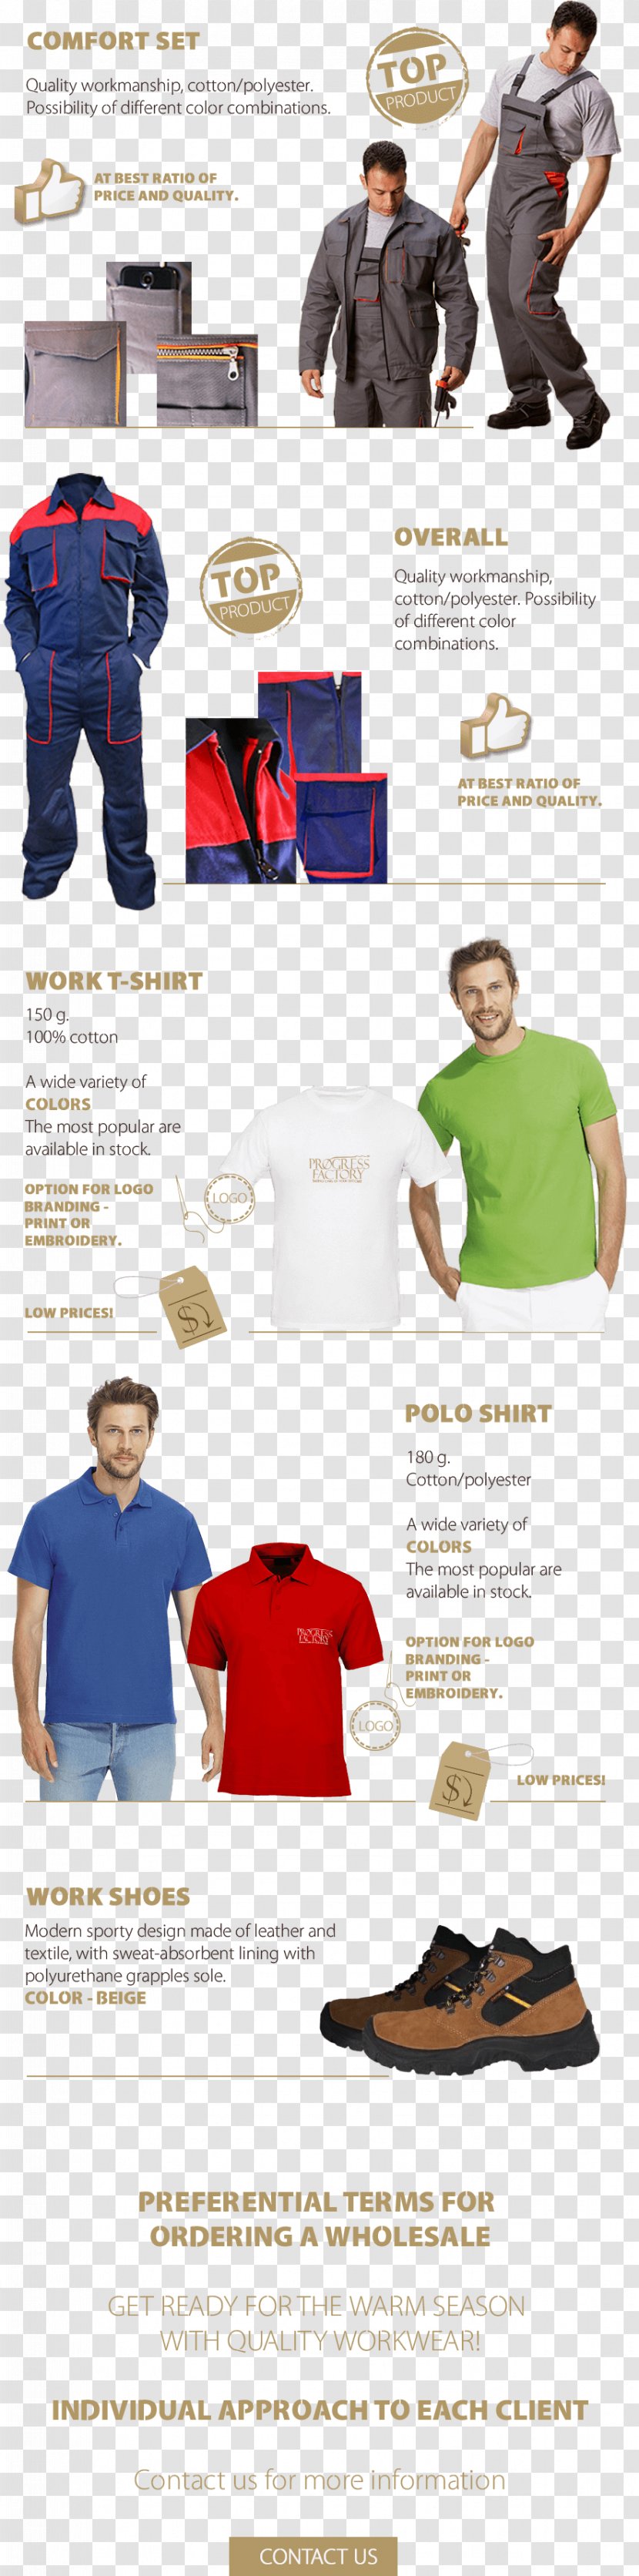 T-shirt Shoulder Sleeve - Marketing Campaign Transparent PNG